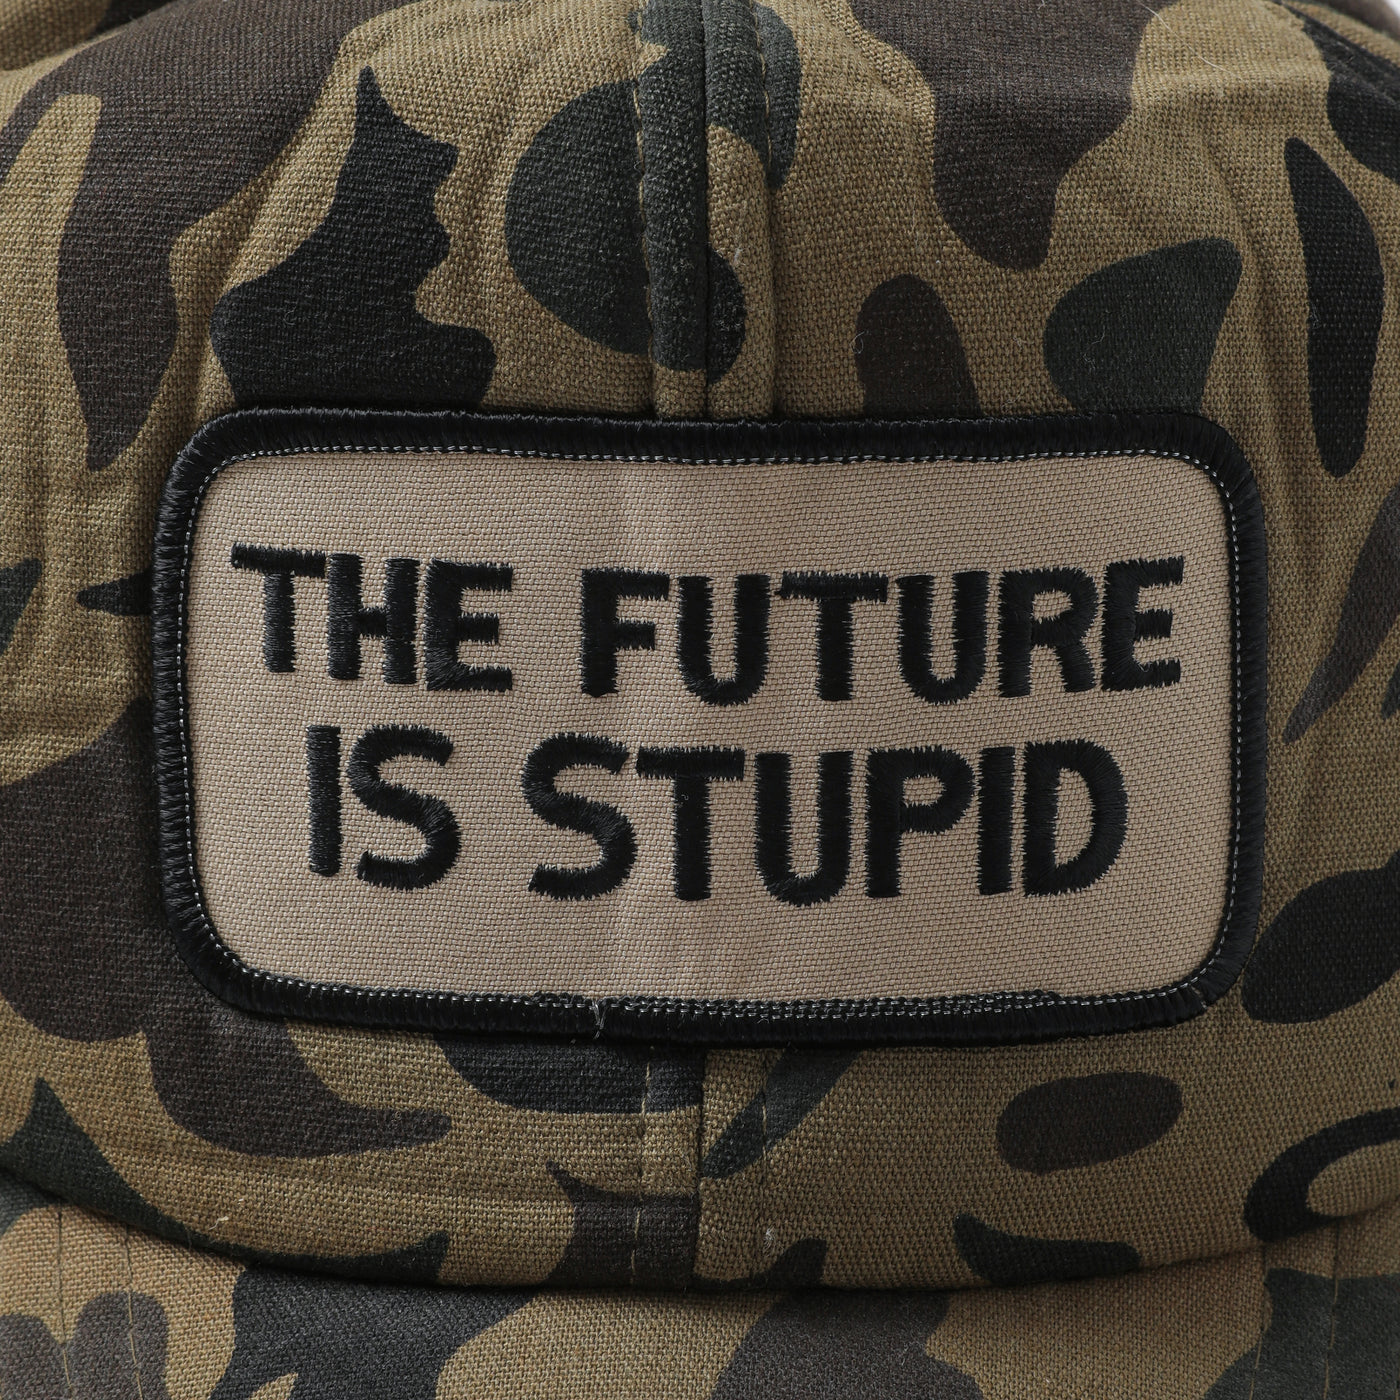 90s Jenny Holzer "The Future is Stupid" cap